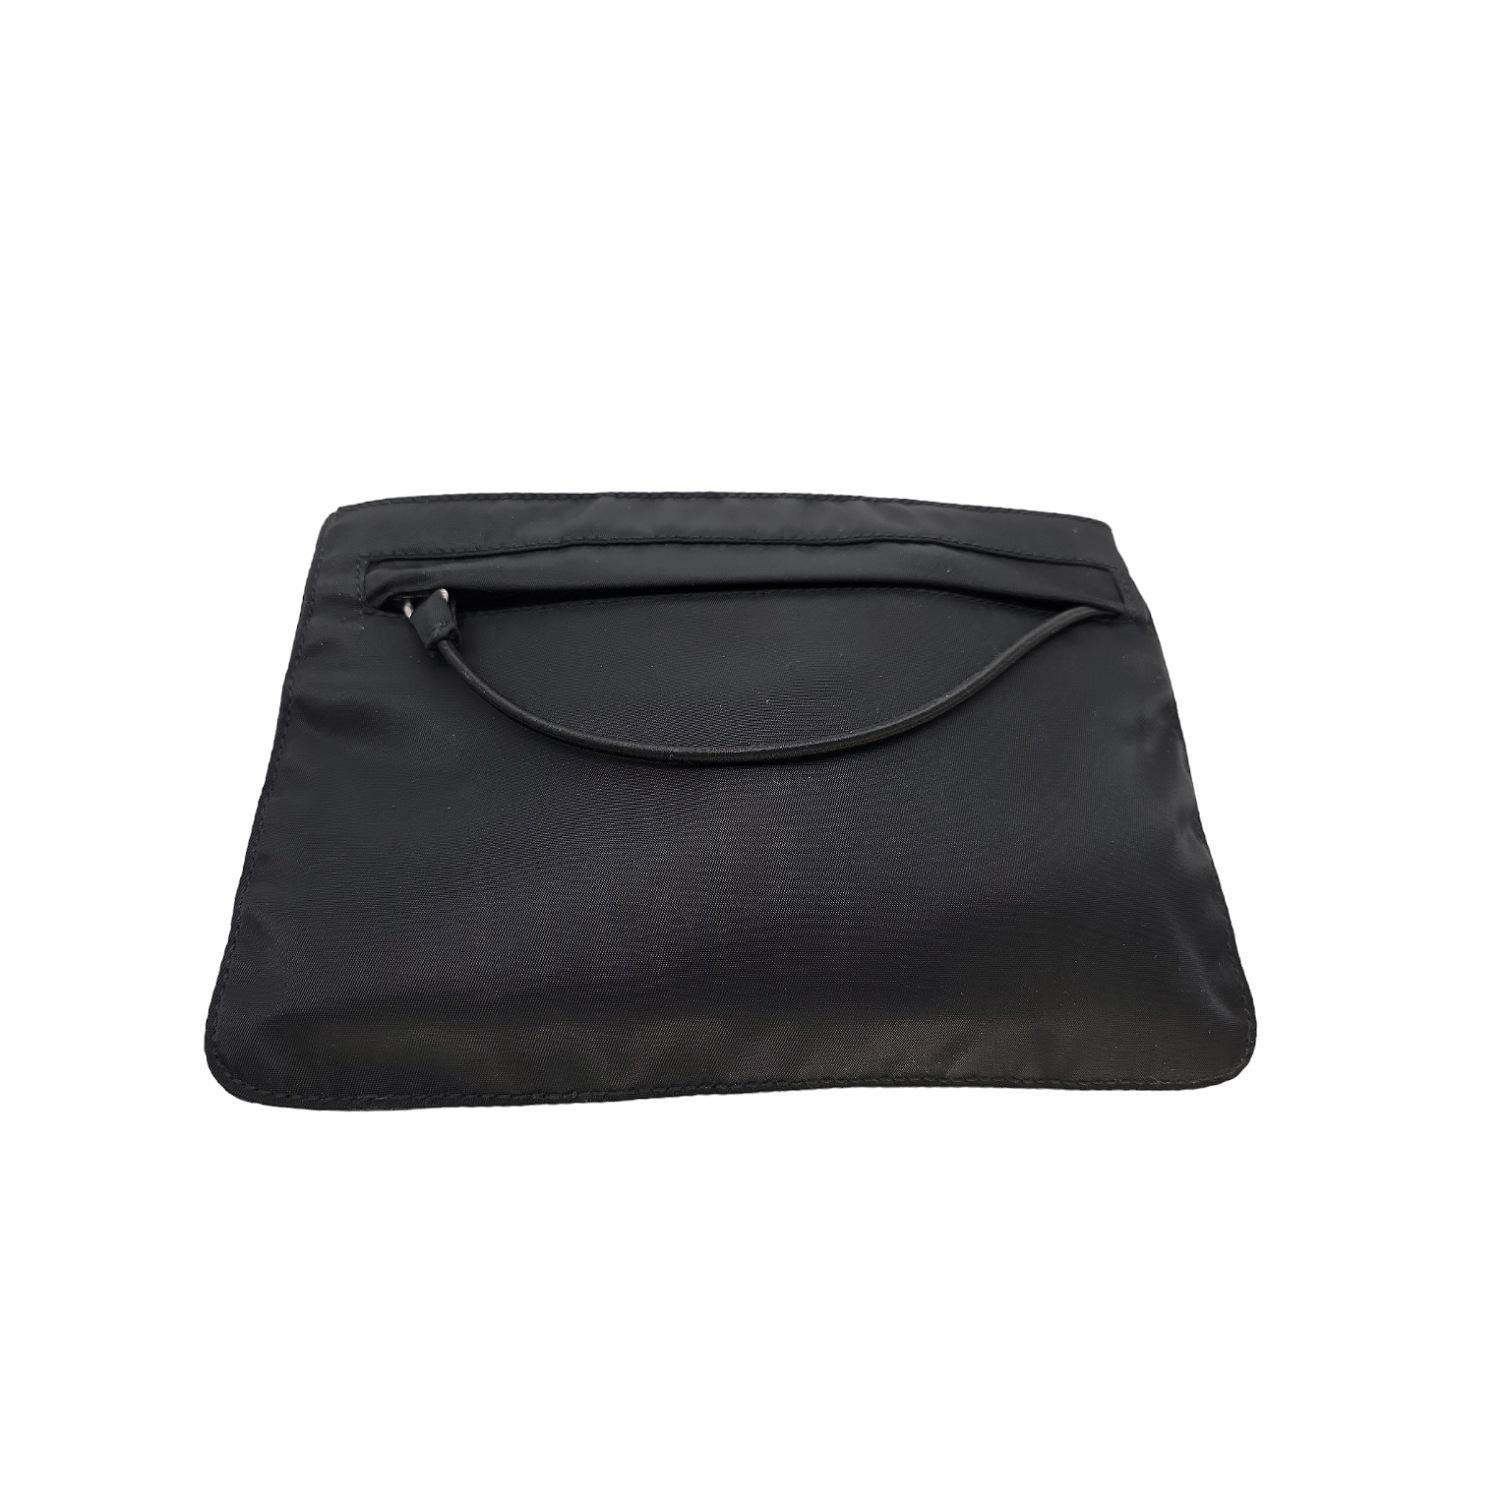 Diese schwarze Tessuto Nylontasche ist sehr vielseitig, sie kann als niedliche kleine Clutch oder Kosmetiktasche verwendet werden, oder einfach durch das Öffnen der zusätzlichen Tasche auf der Rückseite, kann sie sogar als Armband verwendet werden.